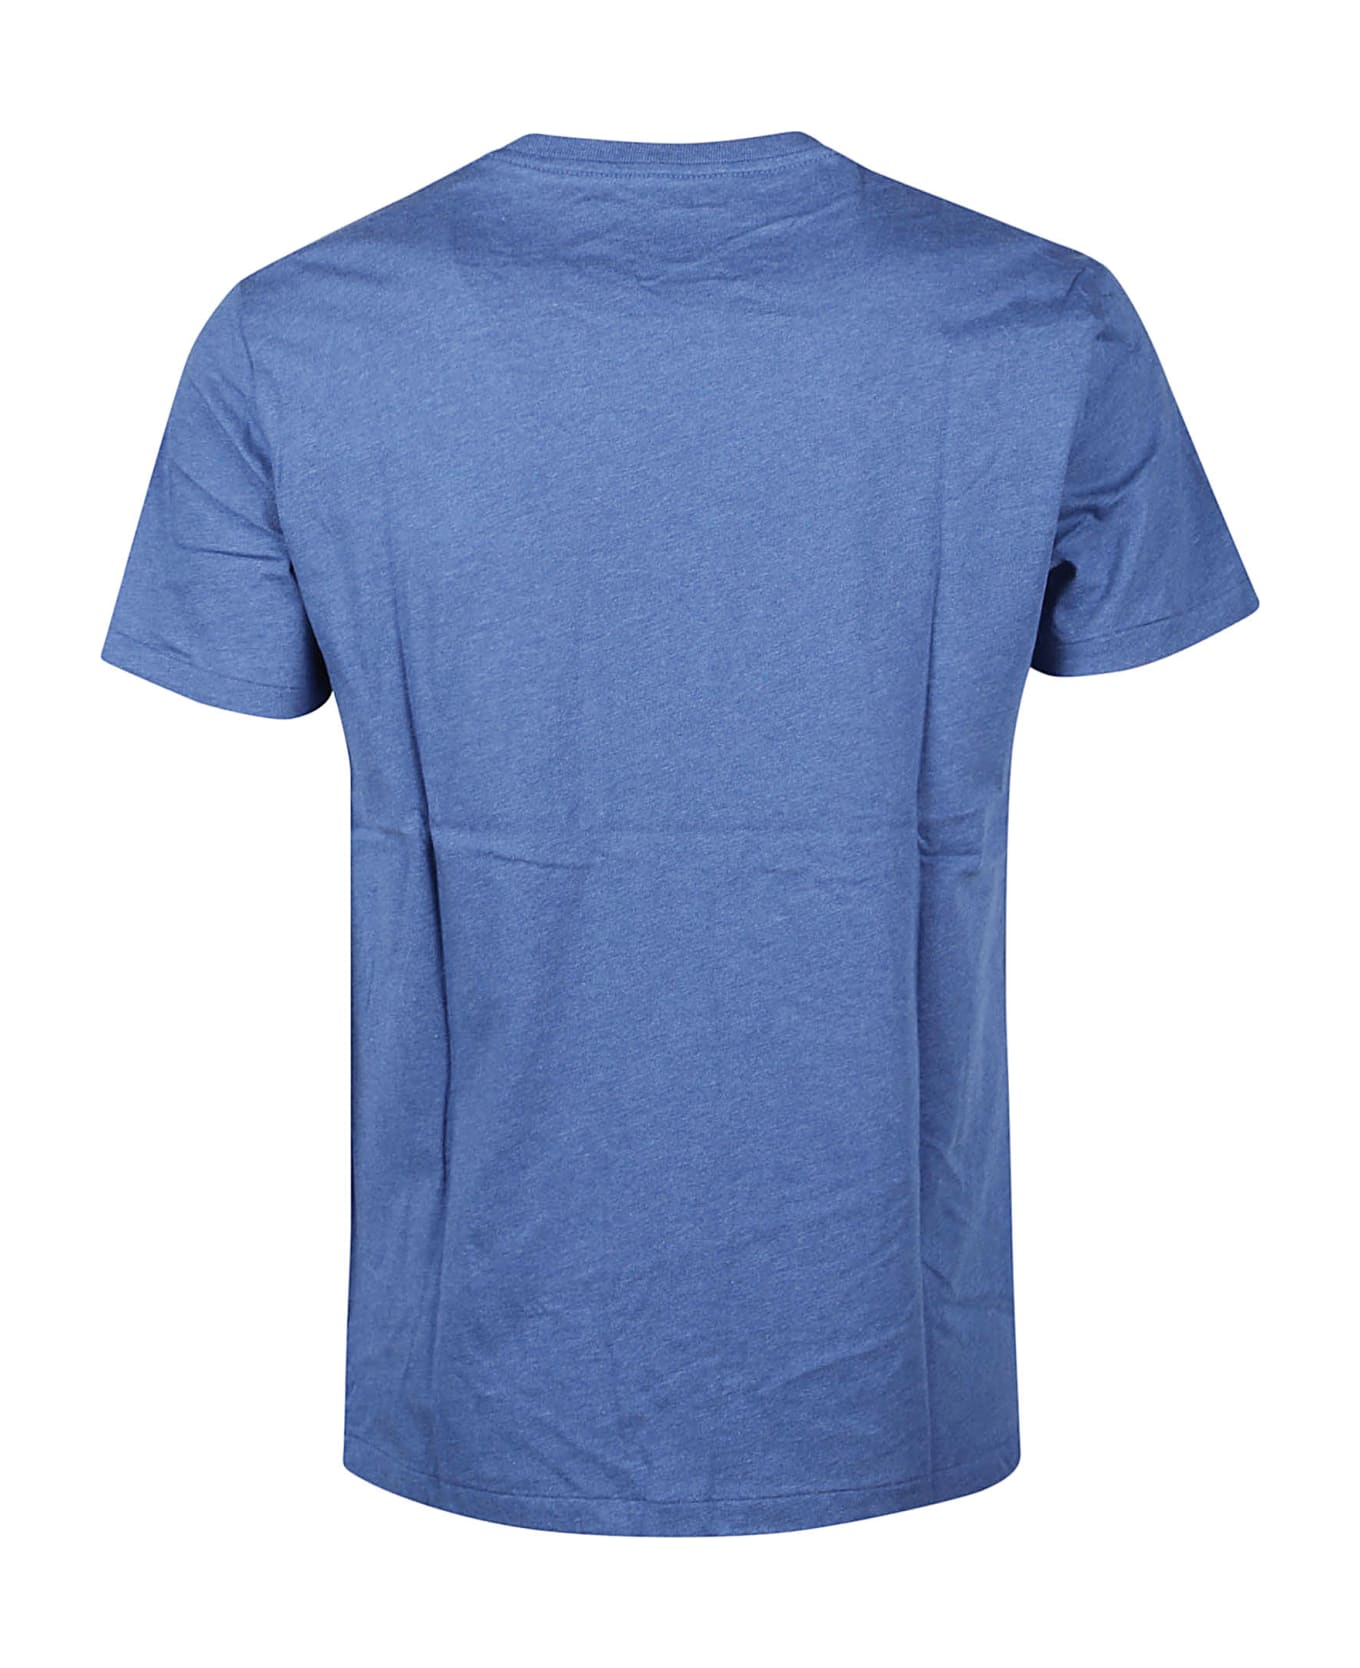 Ralph Lauren T-shirt - Fog Blue Heather